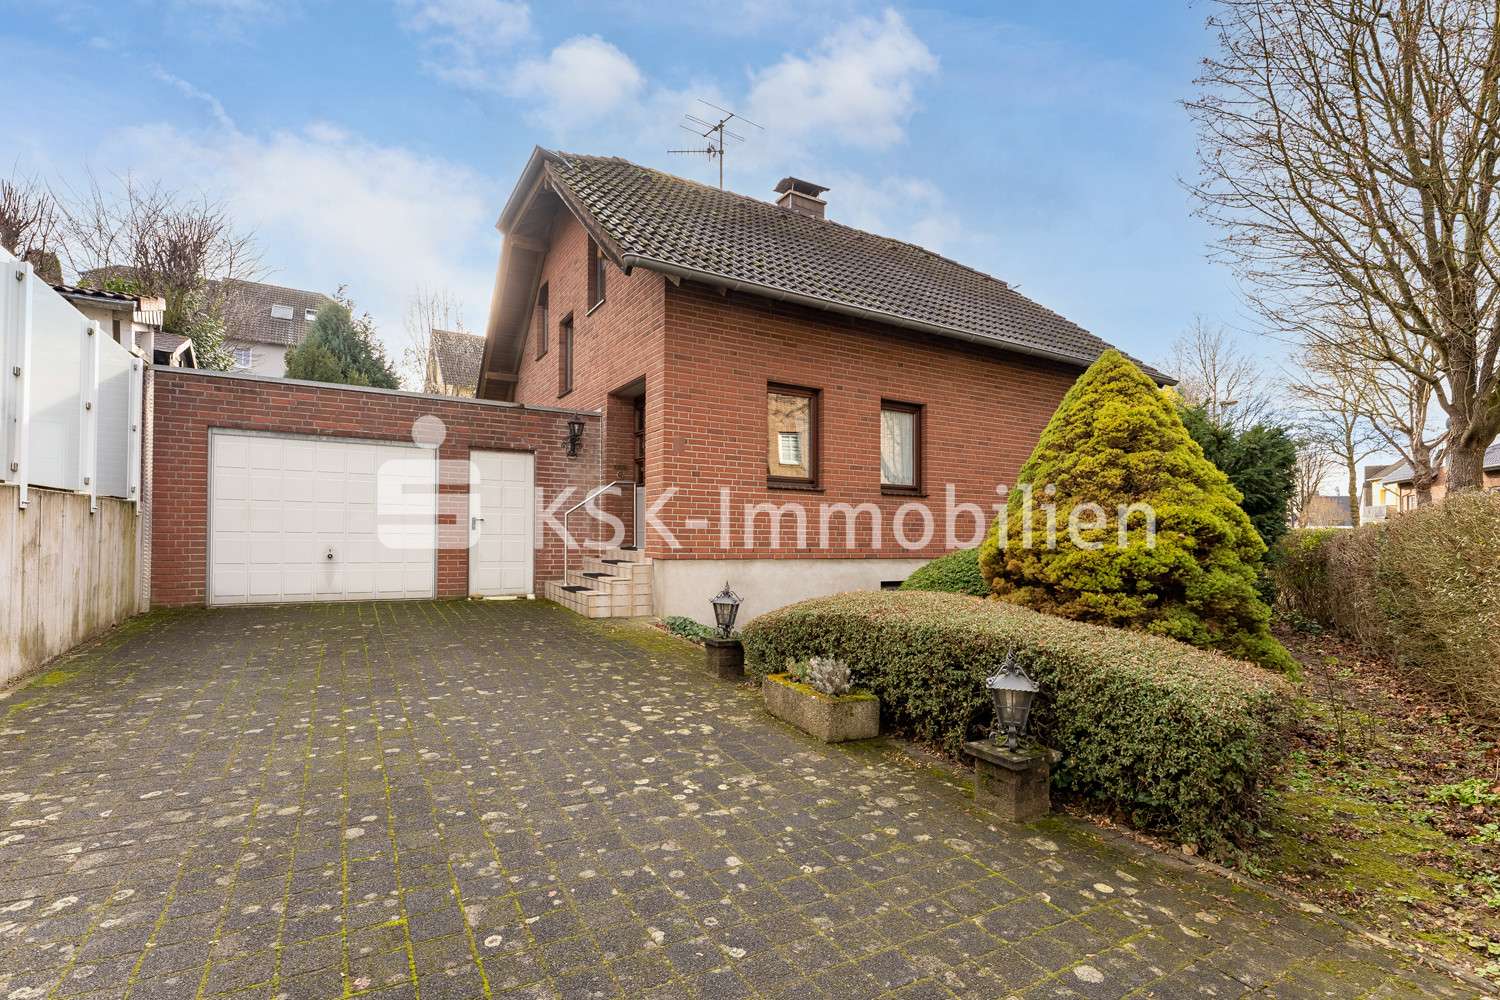 113682 Außenansicht - Einfamilienhaus in 50129 Bergheim mit 86m² günstig kaufen